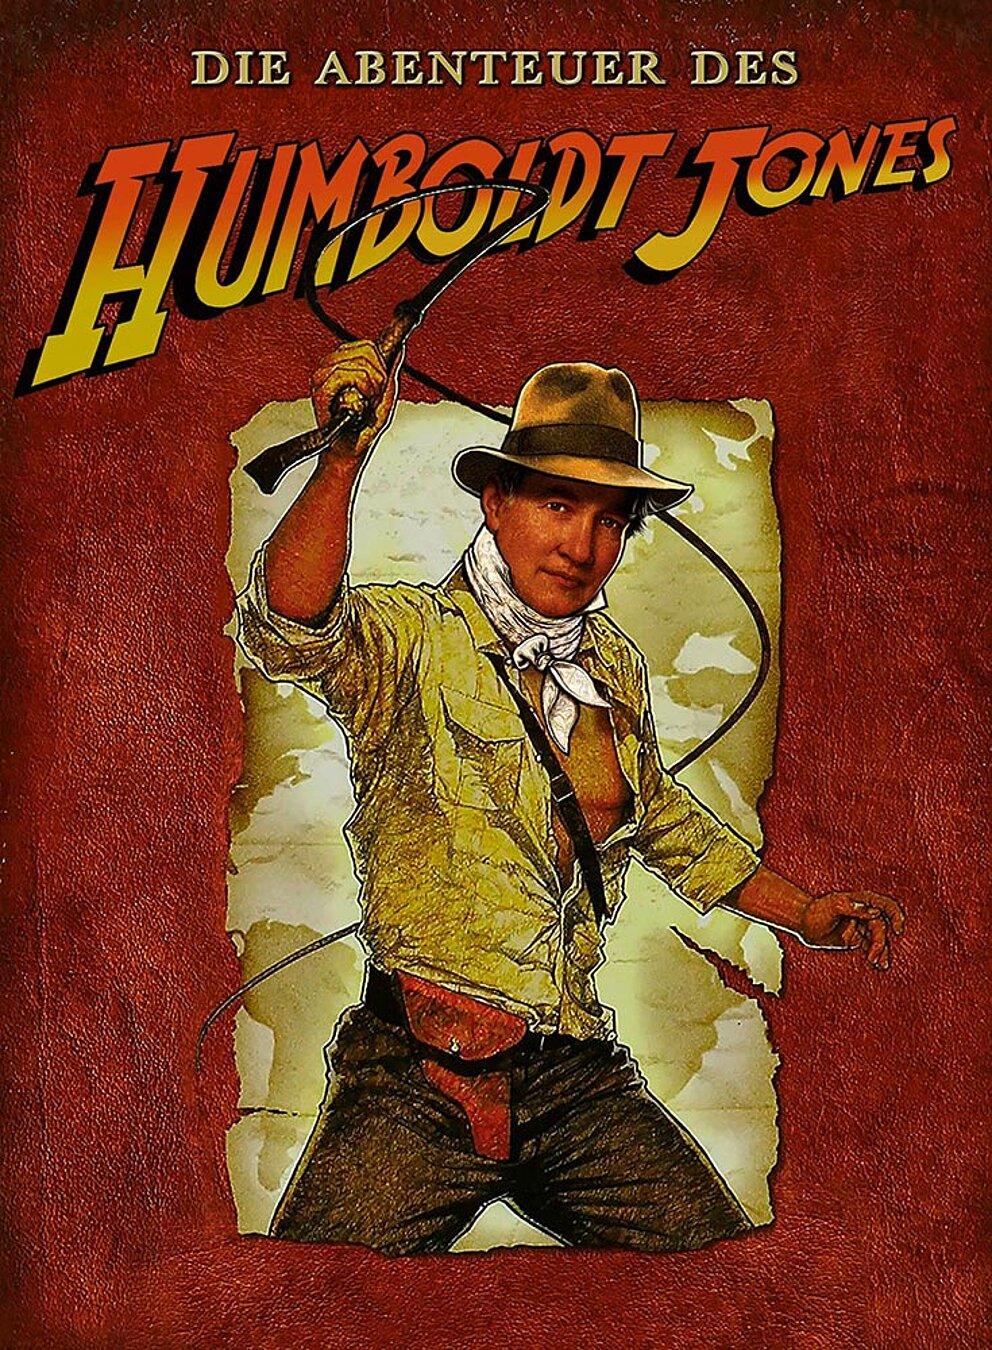 Die Abenteuer des Humboldt Jones: Humboldt schwingt die Peitsche als Indiana Jones